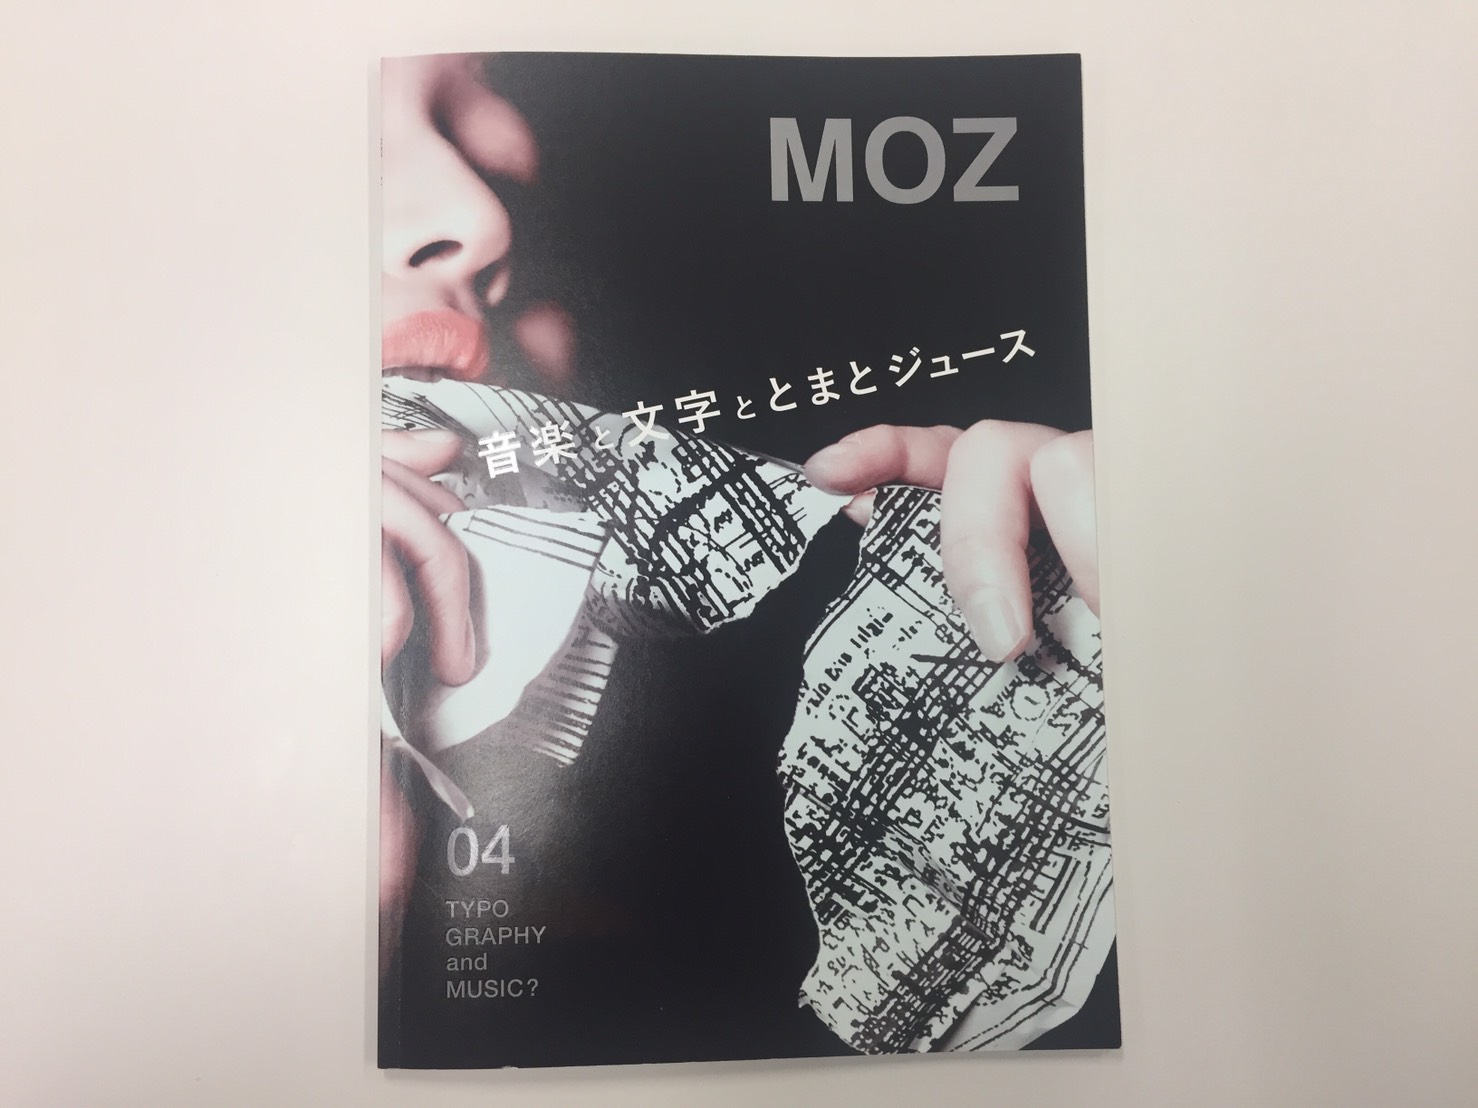 東京藝術大学の学生によるフリーペーパー Moz 4号紹介 Font Switch Project